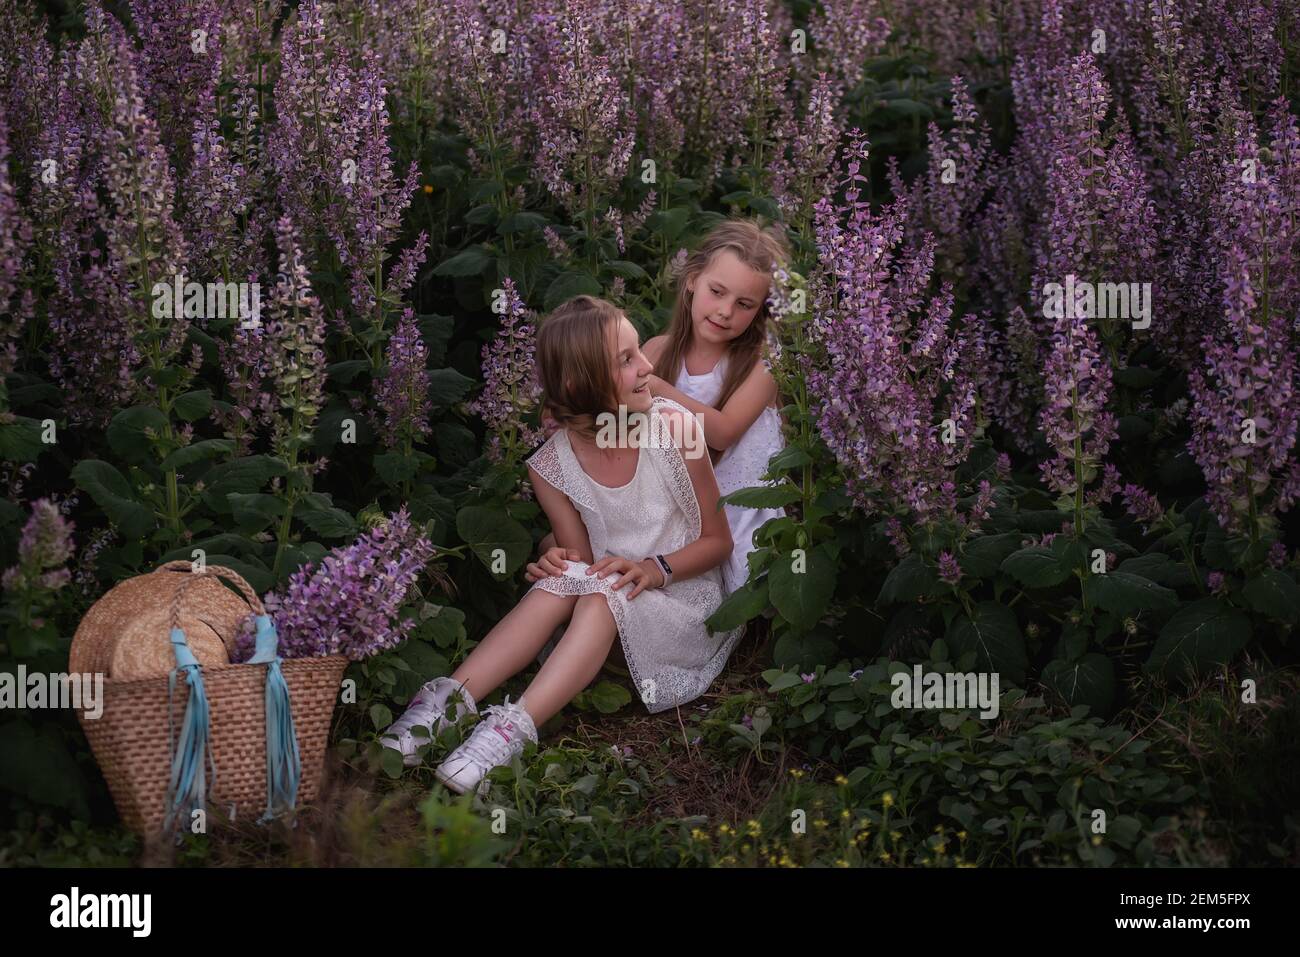 Due sorelle siedono su erba verde in un campo di salvia viola fiorente. Le bambine si abbracciano, tessere le trecce l'una dell'altra. Attività ricreative all'aperto fuori città. Stra Foto Stock